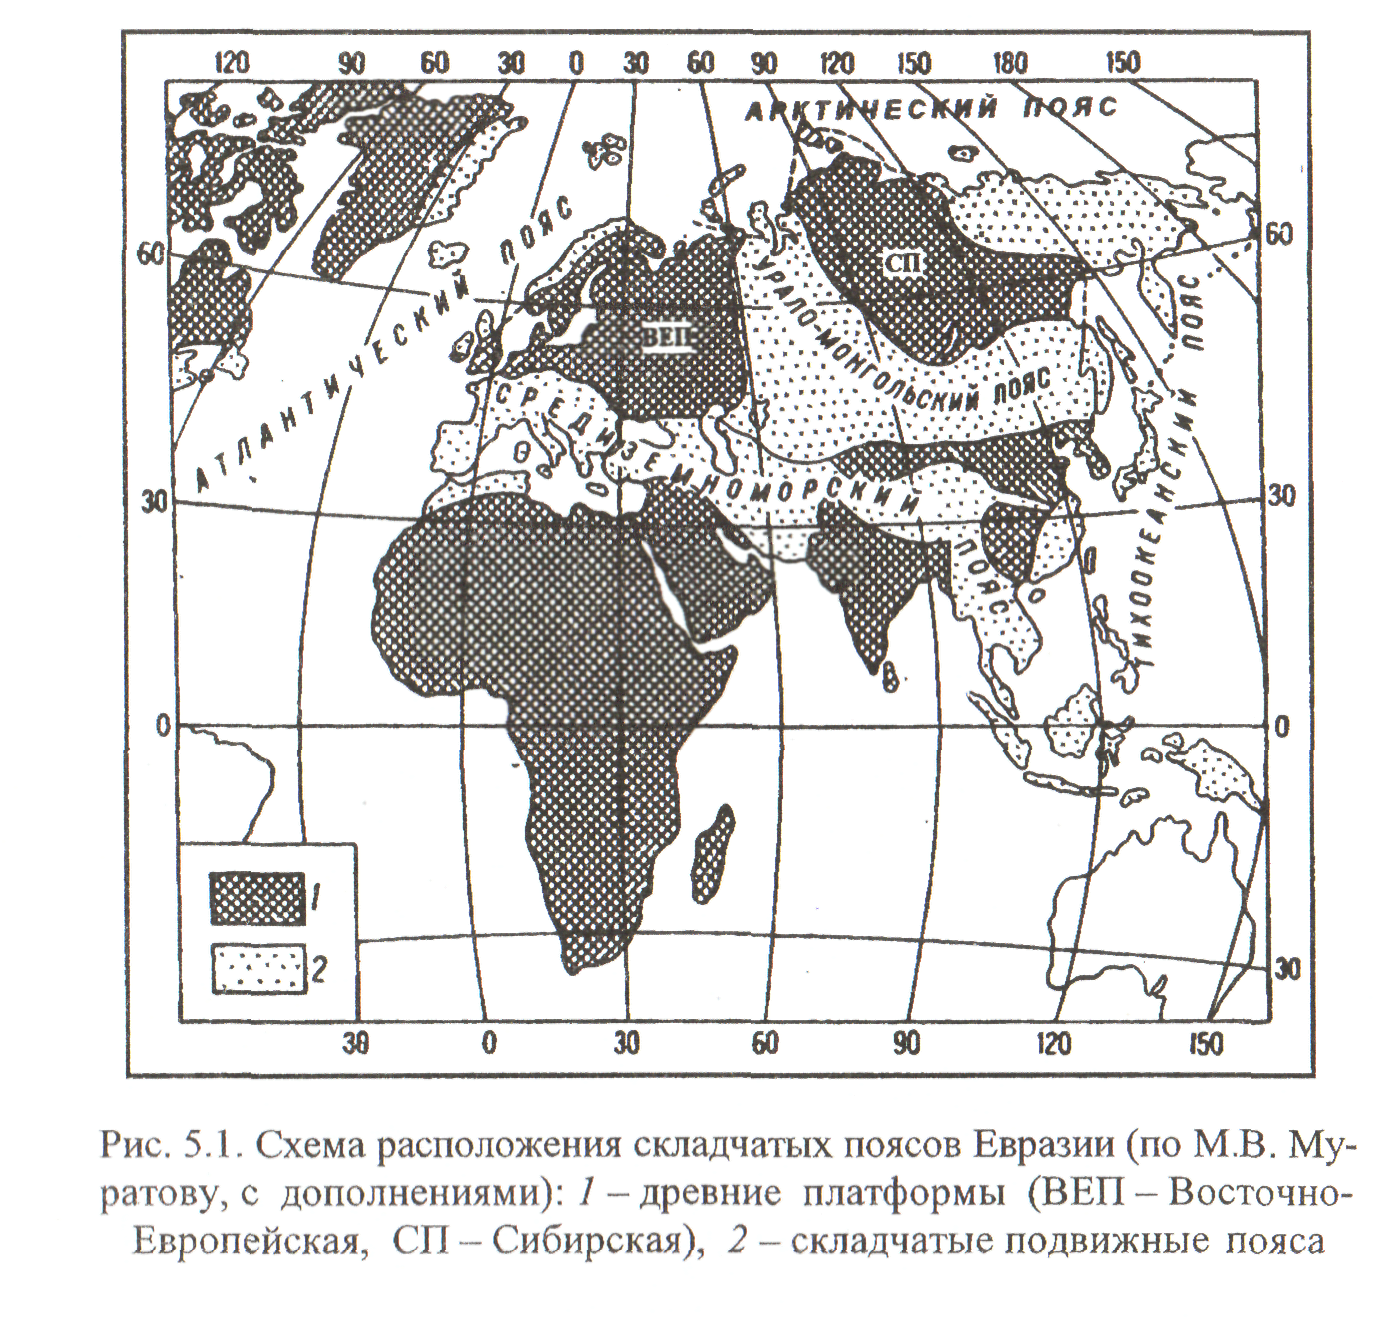 Древние платформы евразии. Альпийско-Гималайский складчатый пояс на карте. Древние платформы Евразии на карте. Урало-монгольский складчатый пояс.